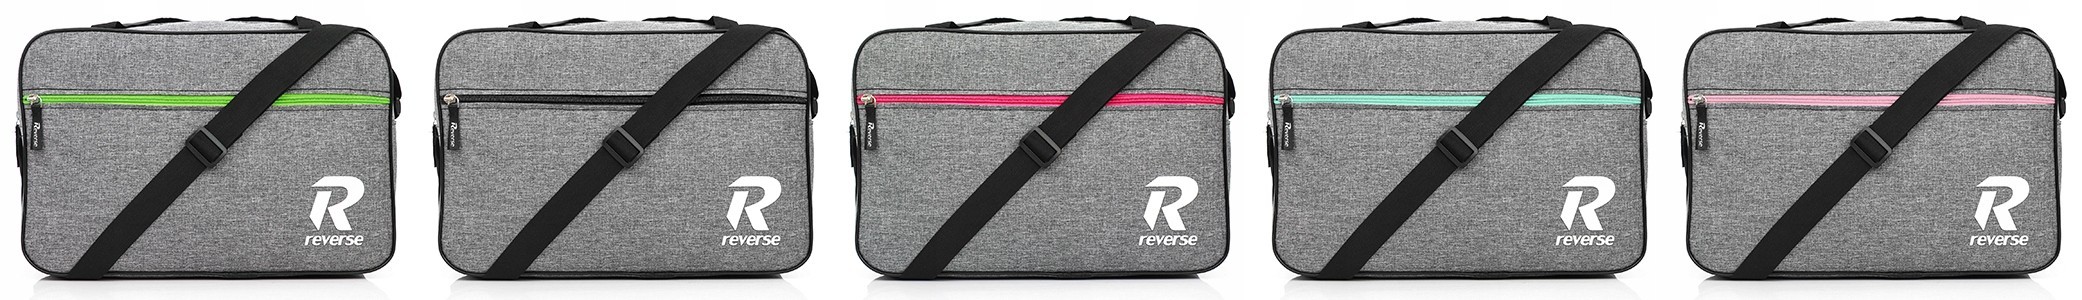 Reverse Cestovní taška CC434